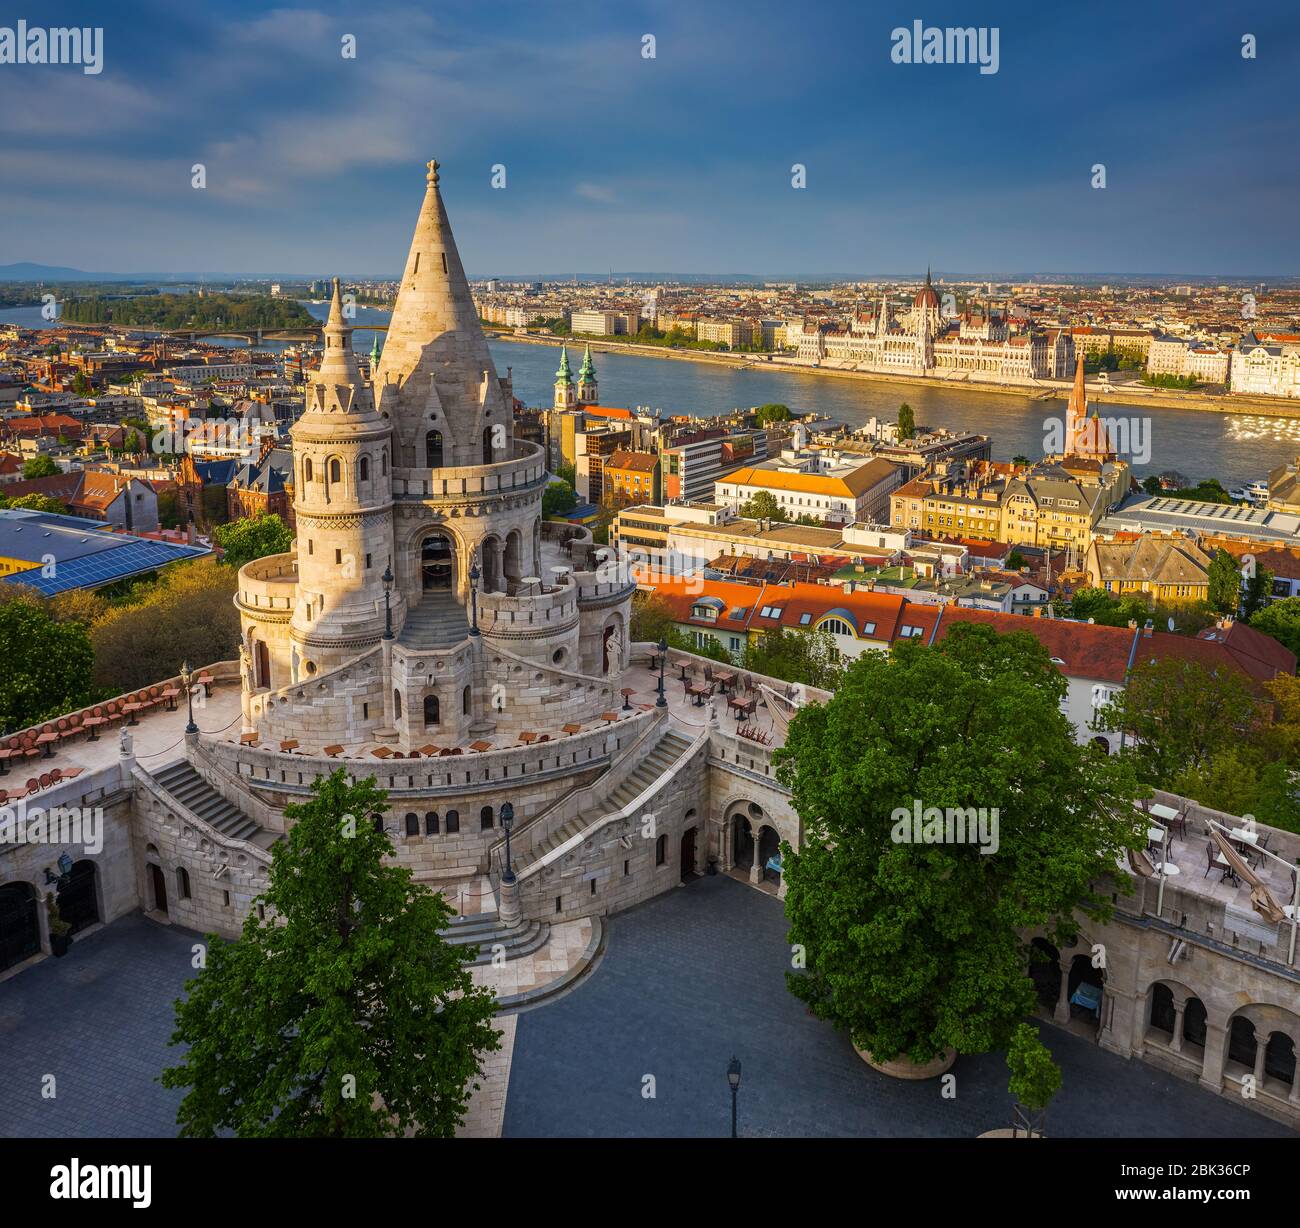 Budapest, Hungría - Vista aérea del famoso Bastión de los pescadores al atardecer con el edificio del Parlamento al fondo. Luz del sol cálida, cielo azul, no hay gente Foto de stock